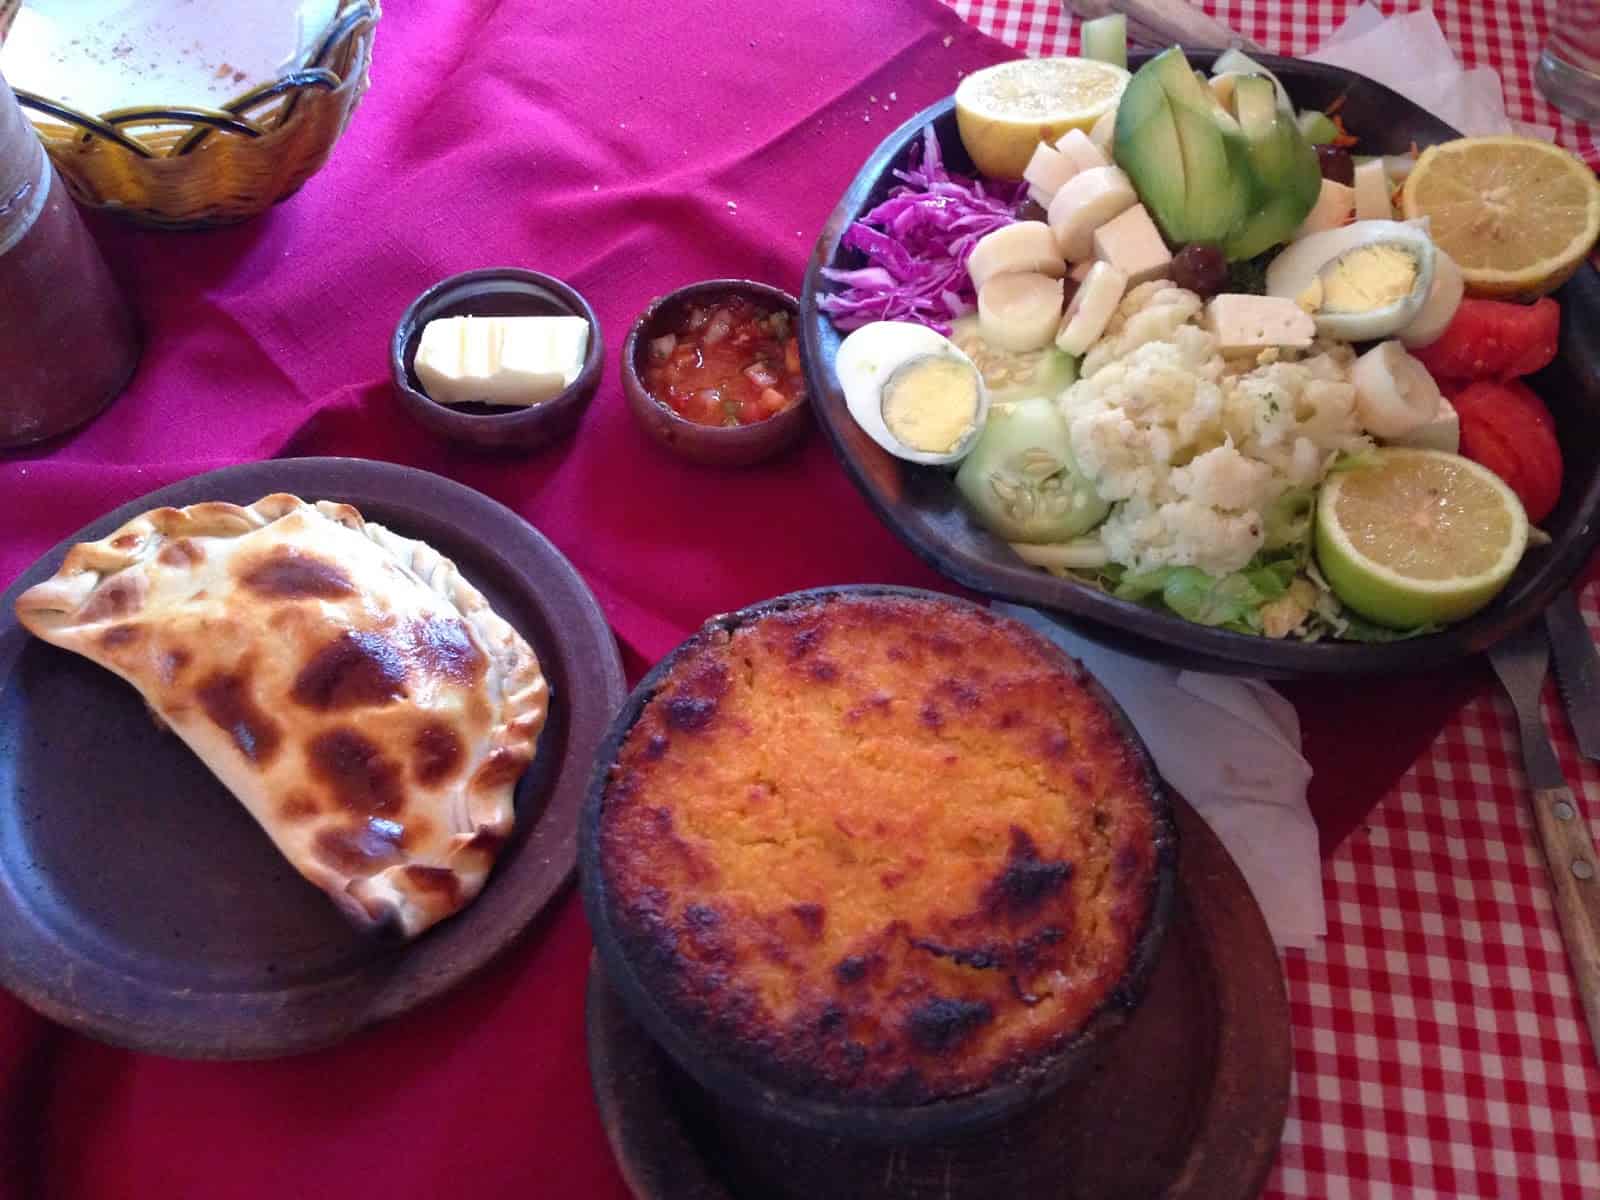 Empanada, pastel de choclo, and plato vegeteriano at Restorant San Pedro in Pomaire, Chile